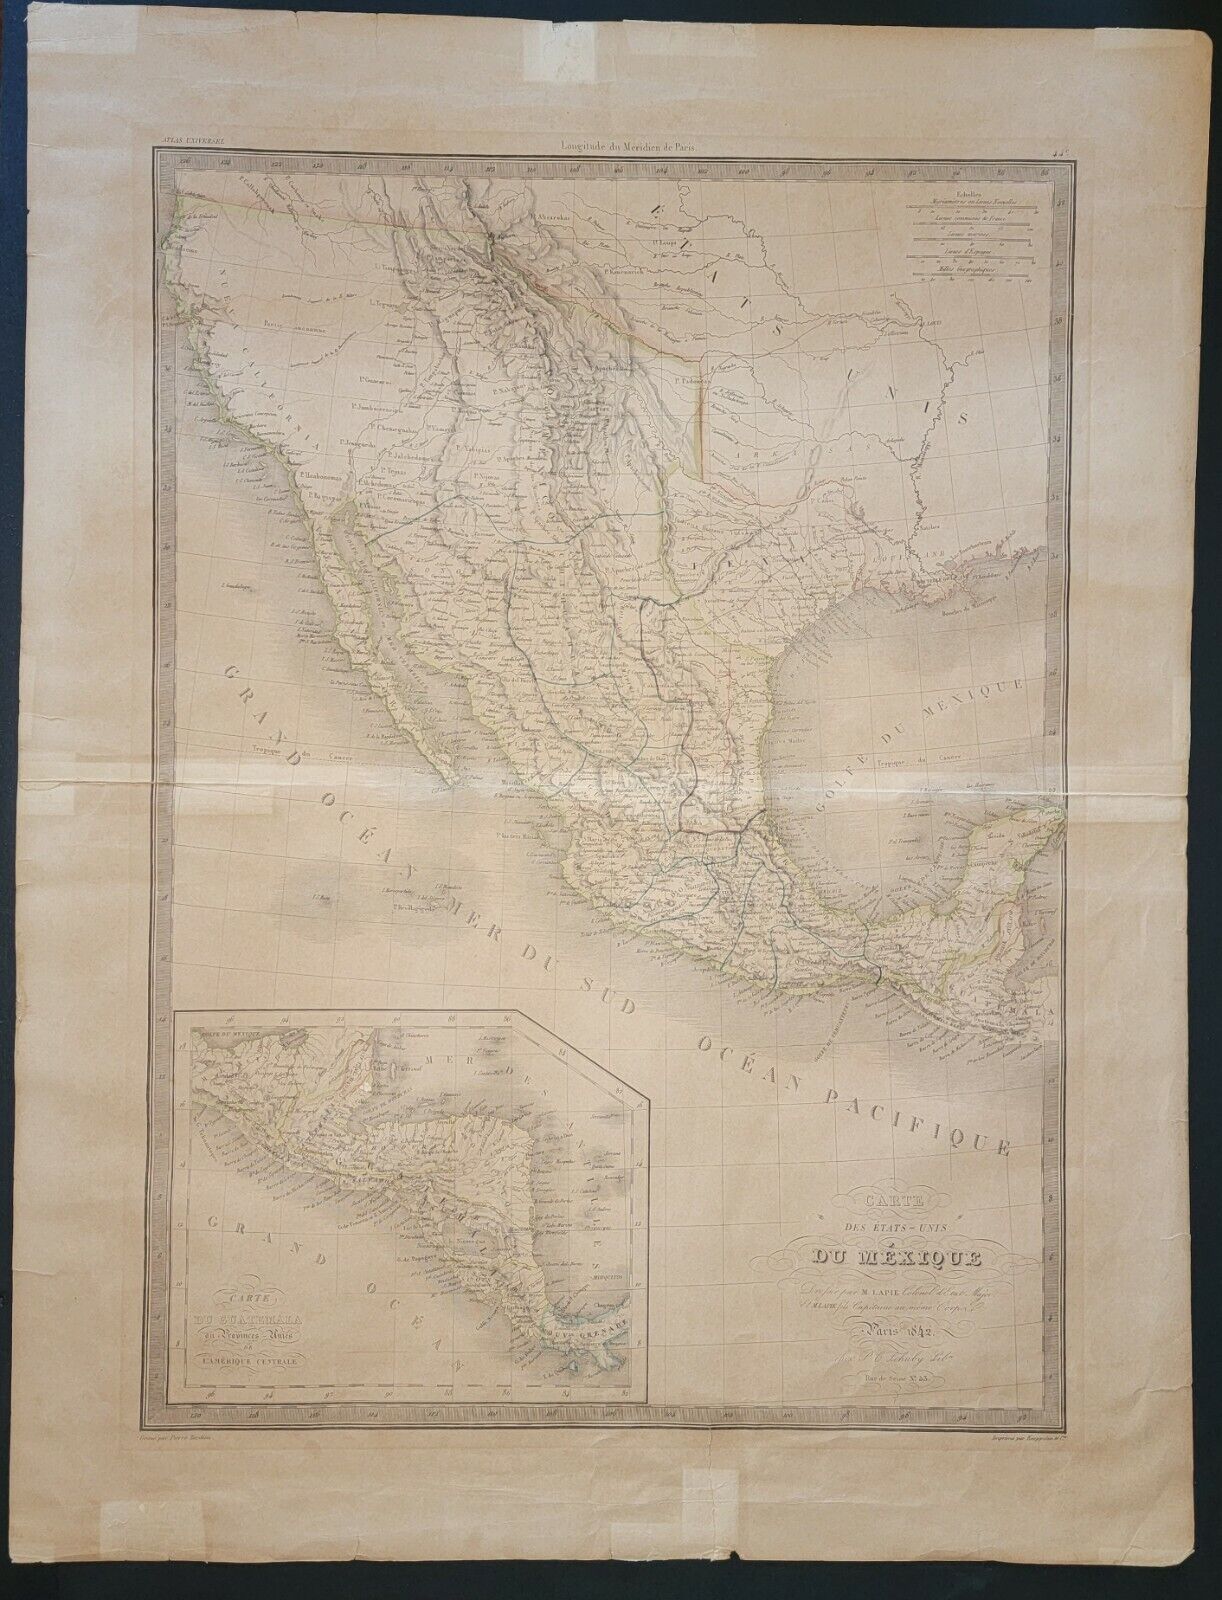 RARE Carte Des Etats-Unis du Mexique ☆ Lapie Paris 1842 ☆ REPUBLIC OF TEXAS Map